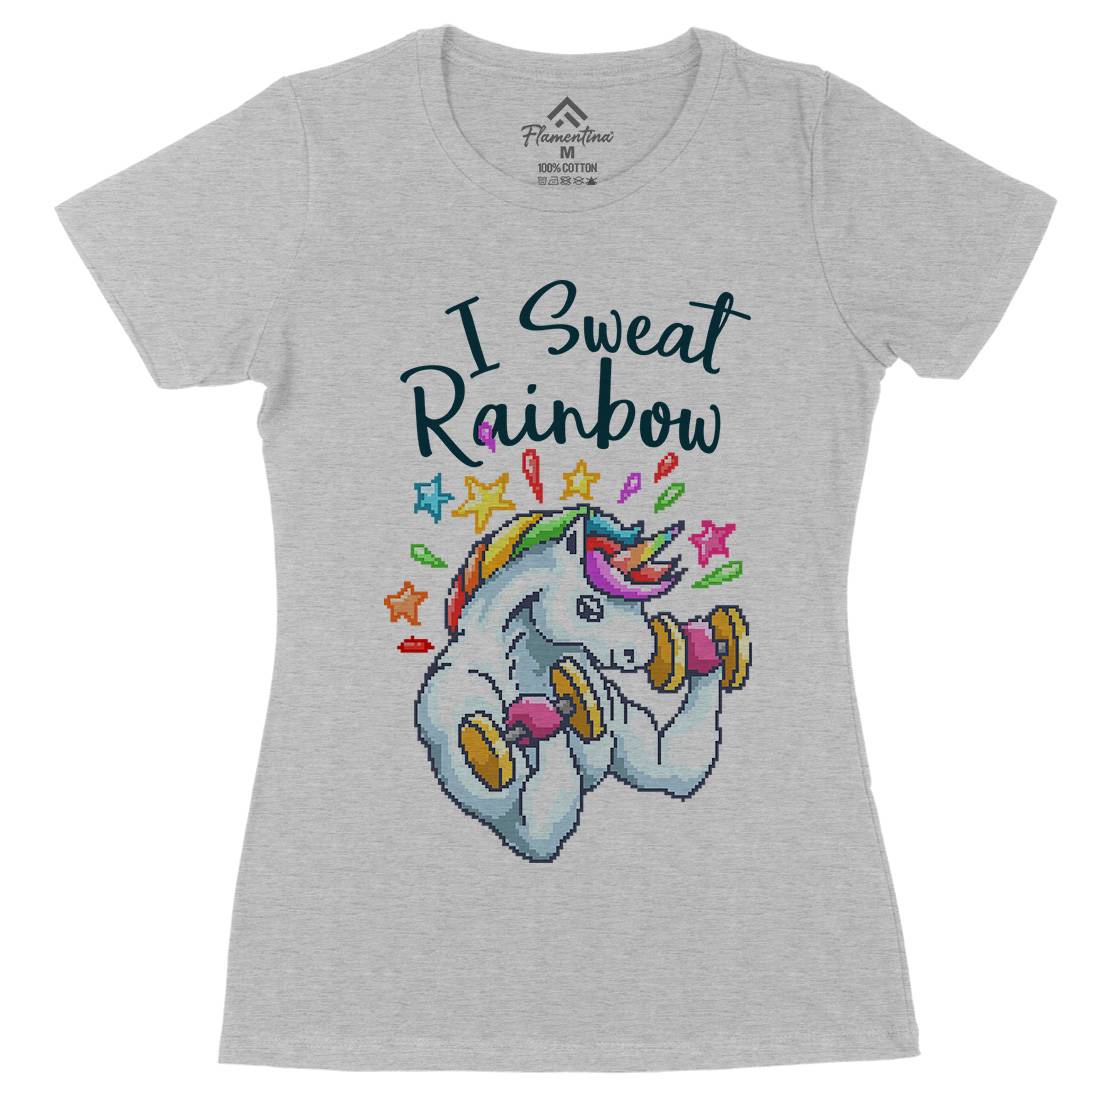 I Sweat Rainbow Womens Organic Crew Neck T-Shirt Retro B916